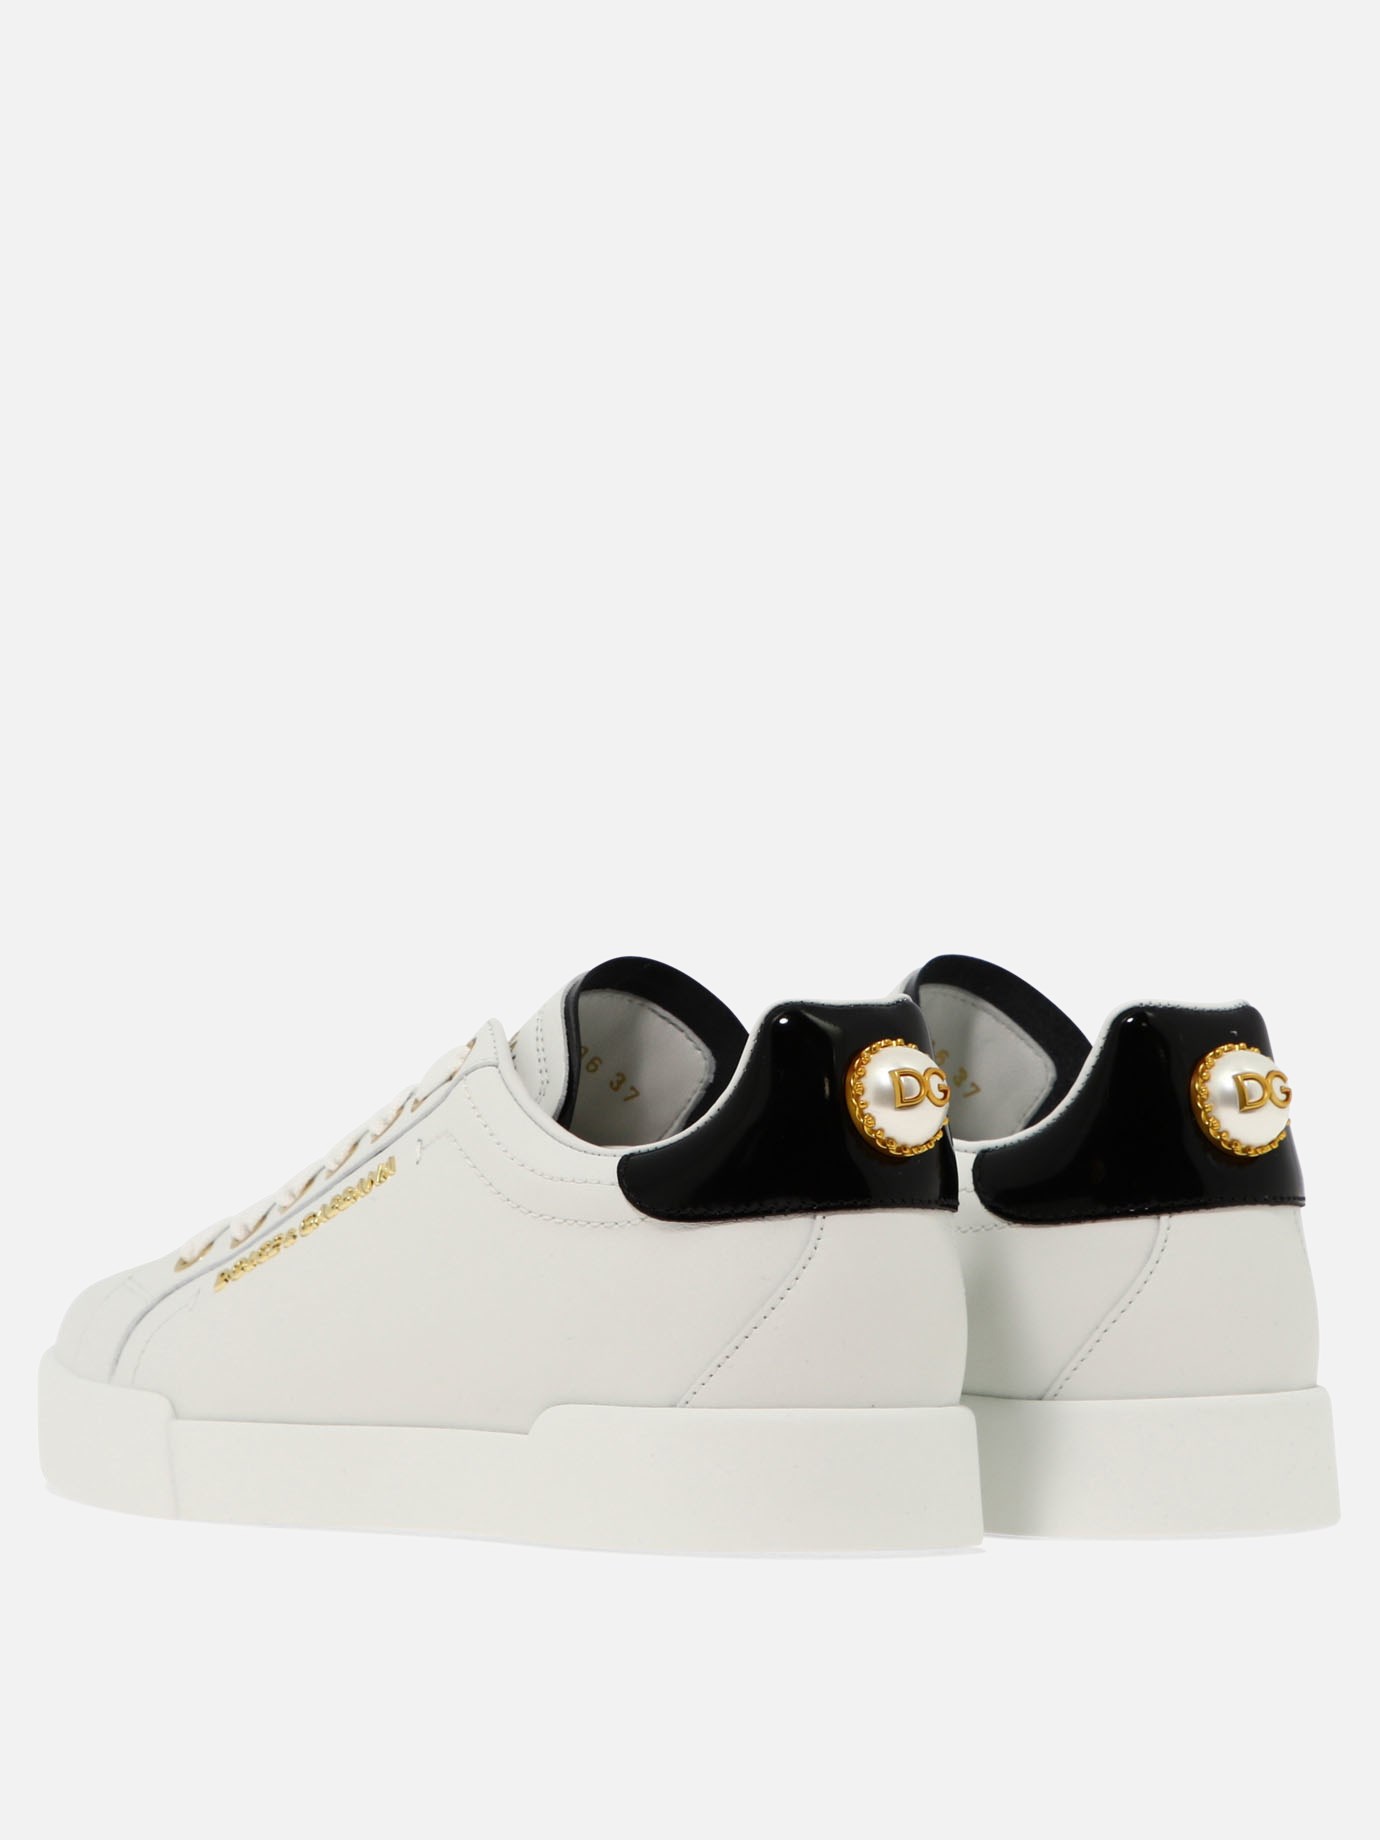  Portofino  sneakers by Dolce & Gabbana